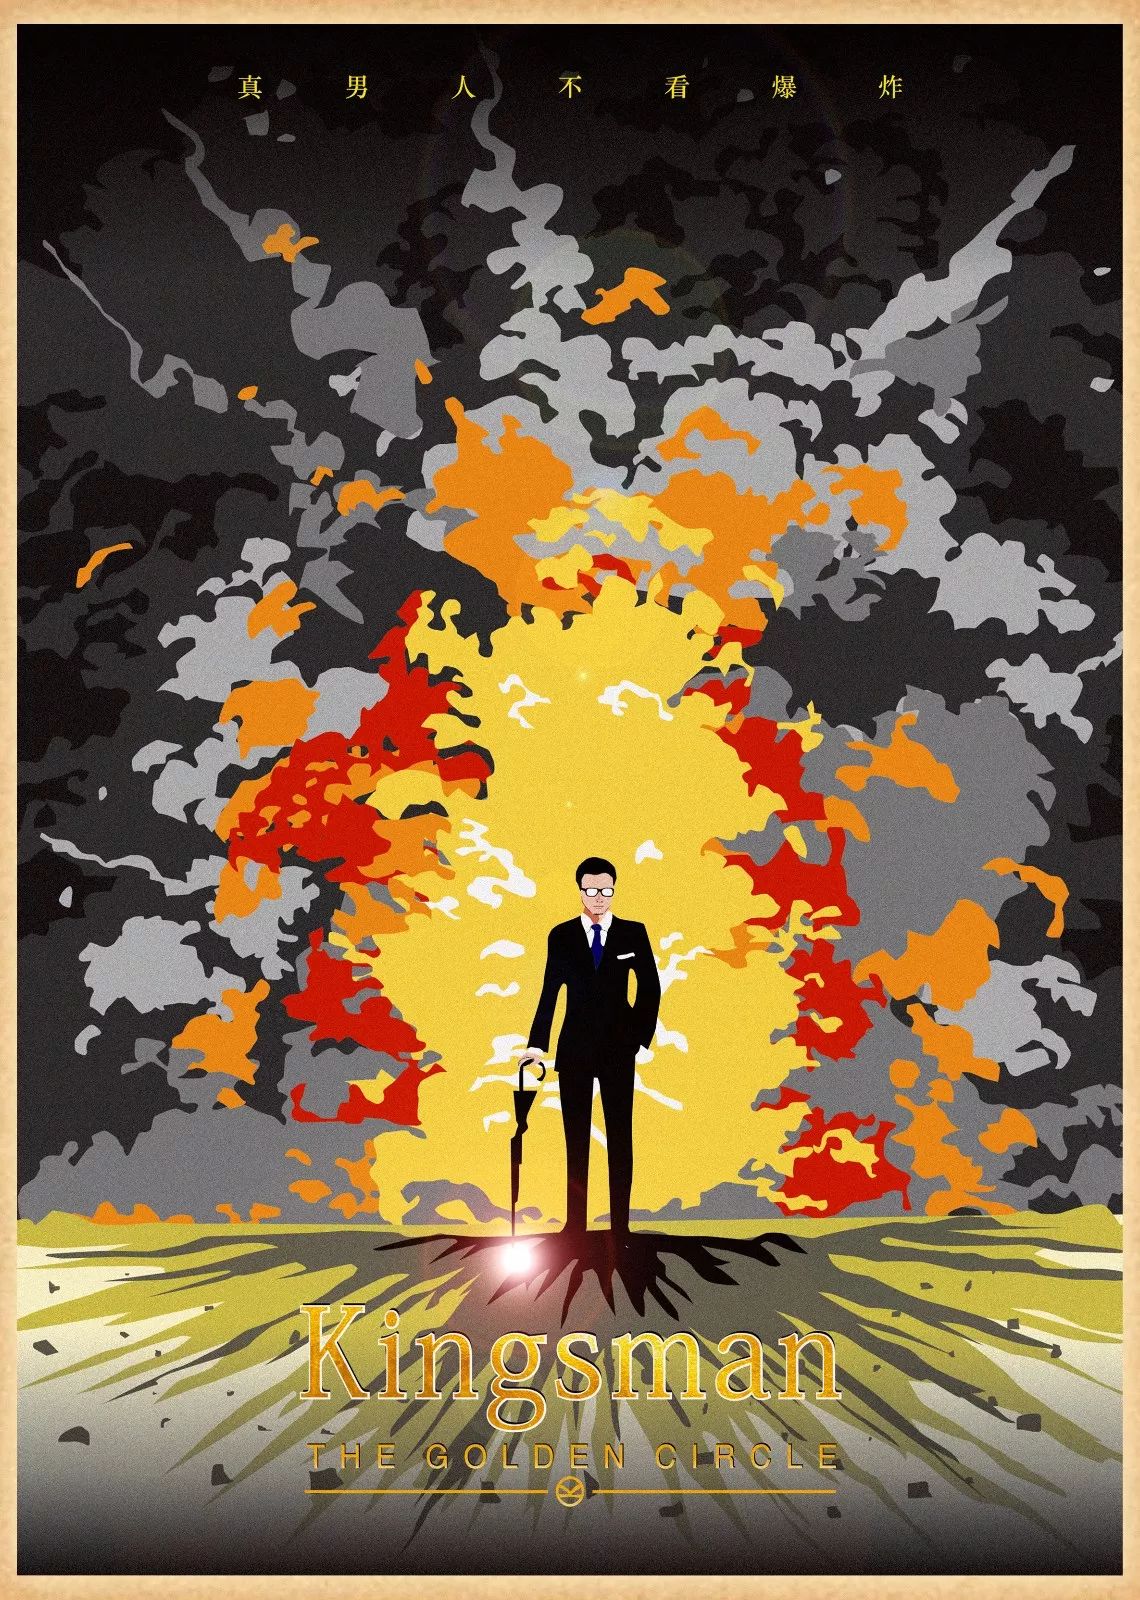 《王牌特工2》即将上映,这些粉丝设计的电影海报很有看点!